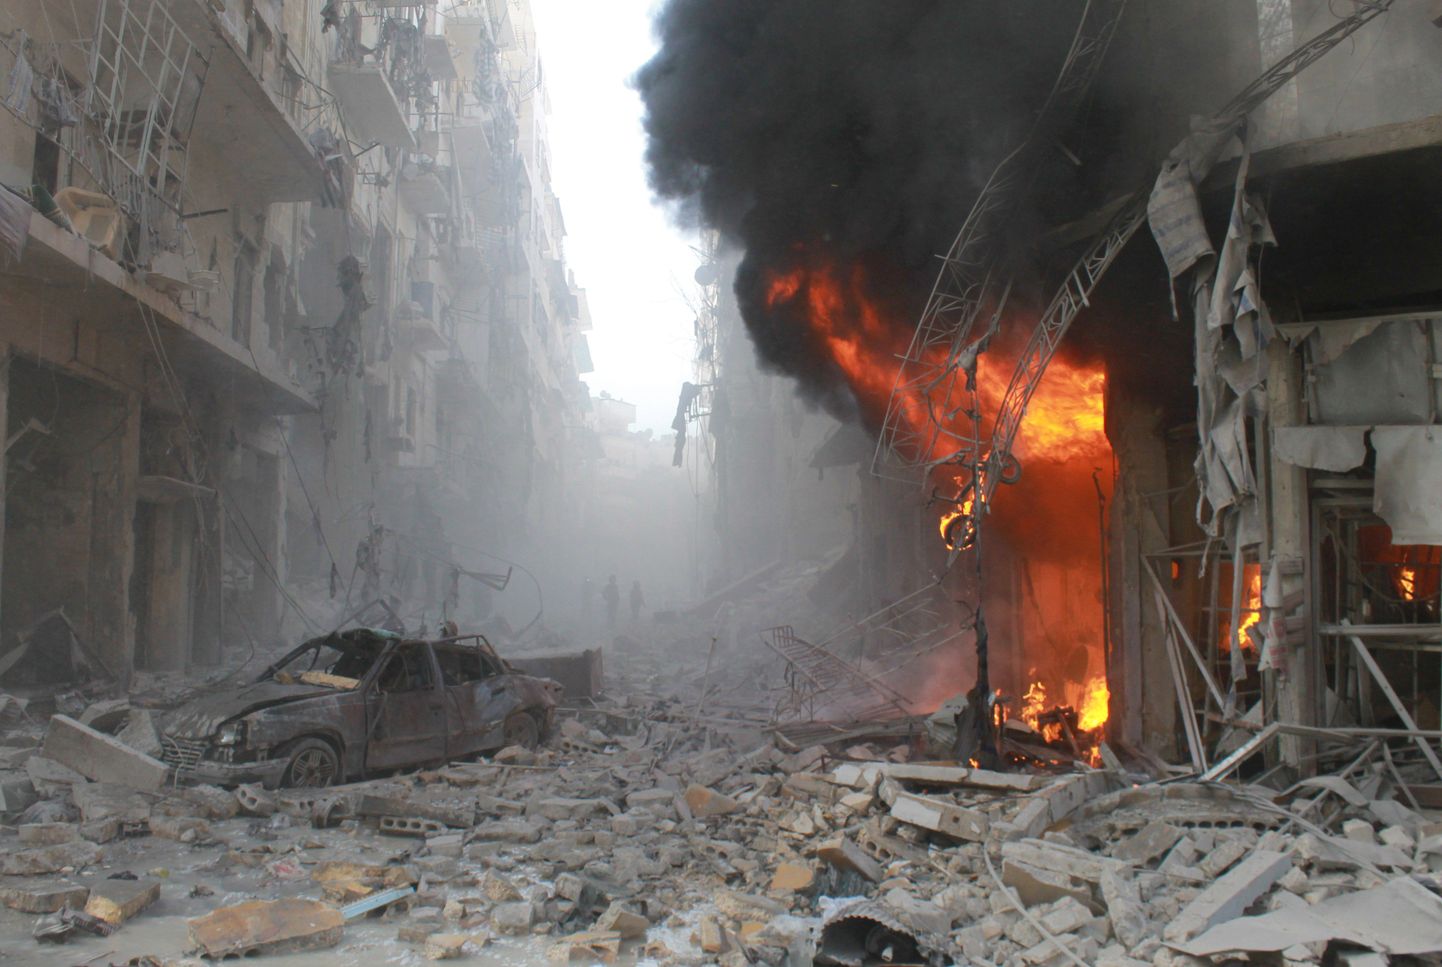 Raporti kohaselt on ajakirjanike jaoks kõige ohtlikum tööpaik Süüria.